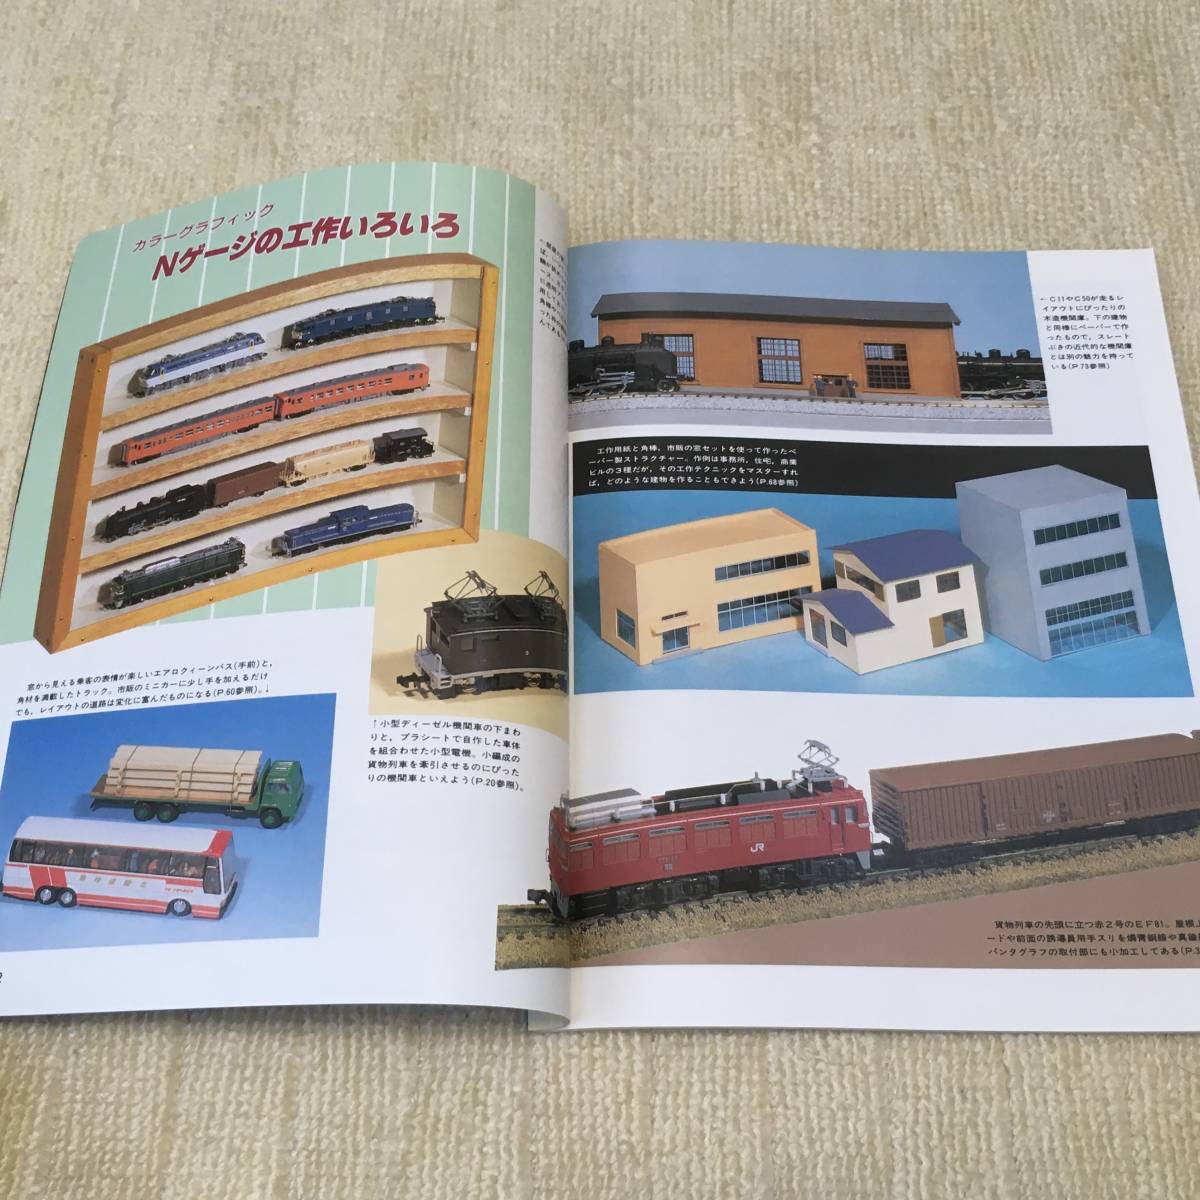 【模型】Nゲージマガジン No.13 1990 SUMMER 夏 鉄道模型趣味増刊 レイアウト 工作 改造 485系 205系 キット 車輌展示 ブック形ケース EF81_画像5